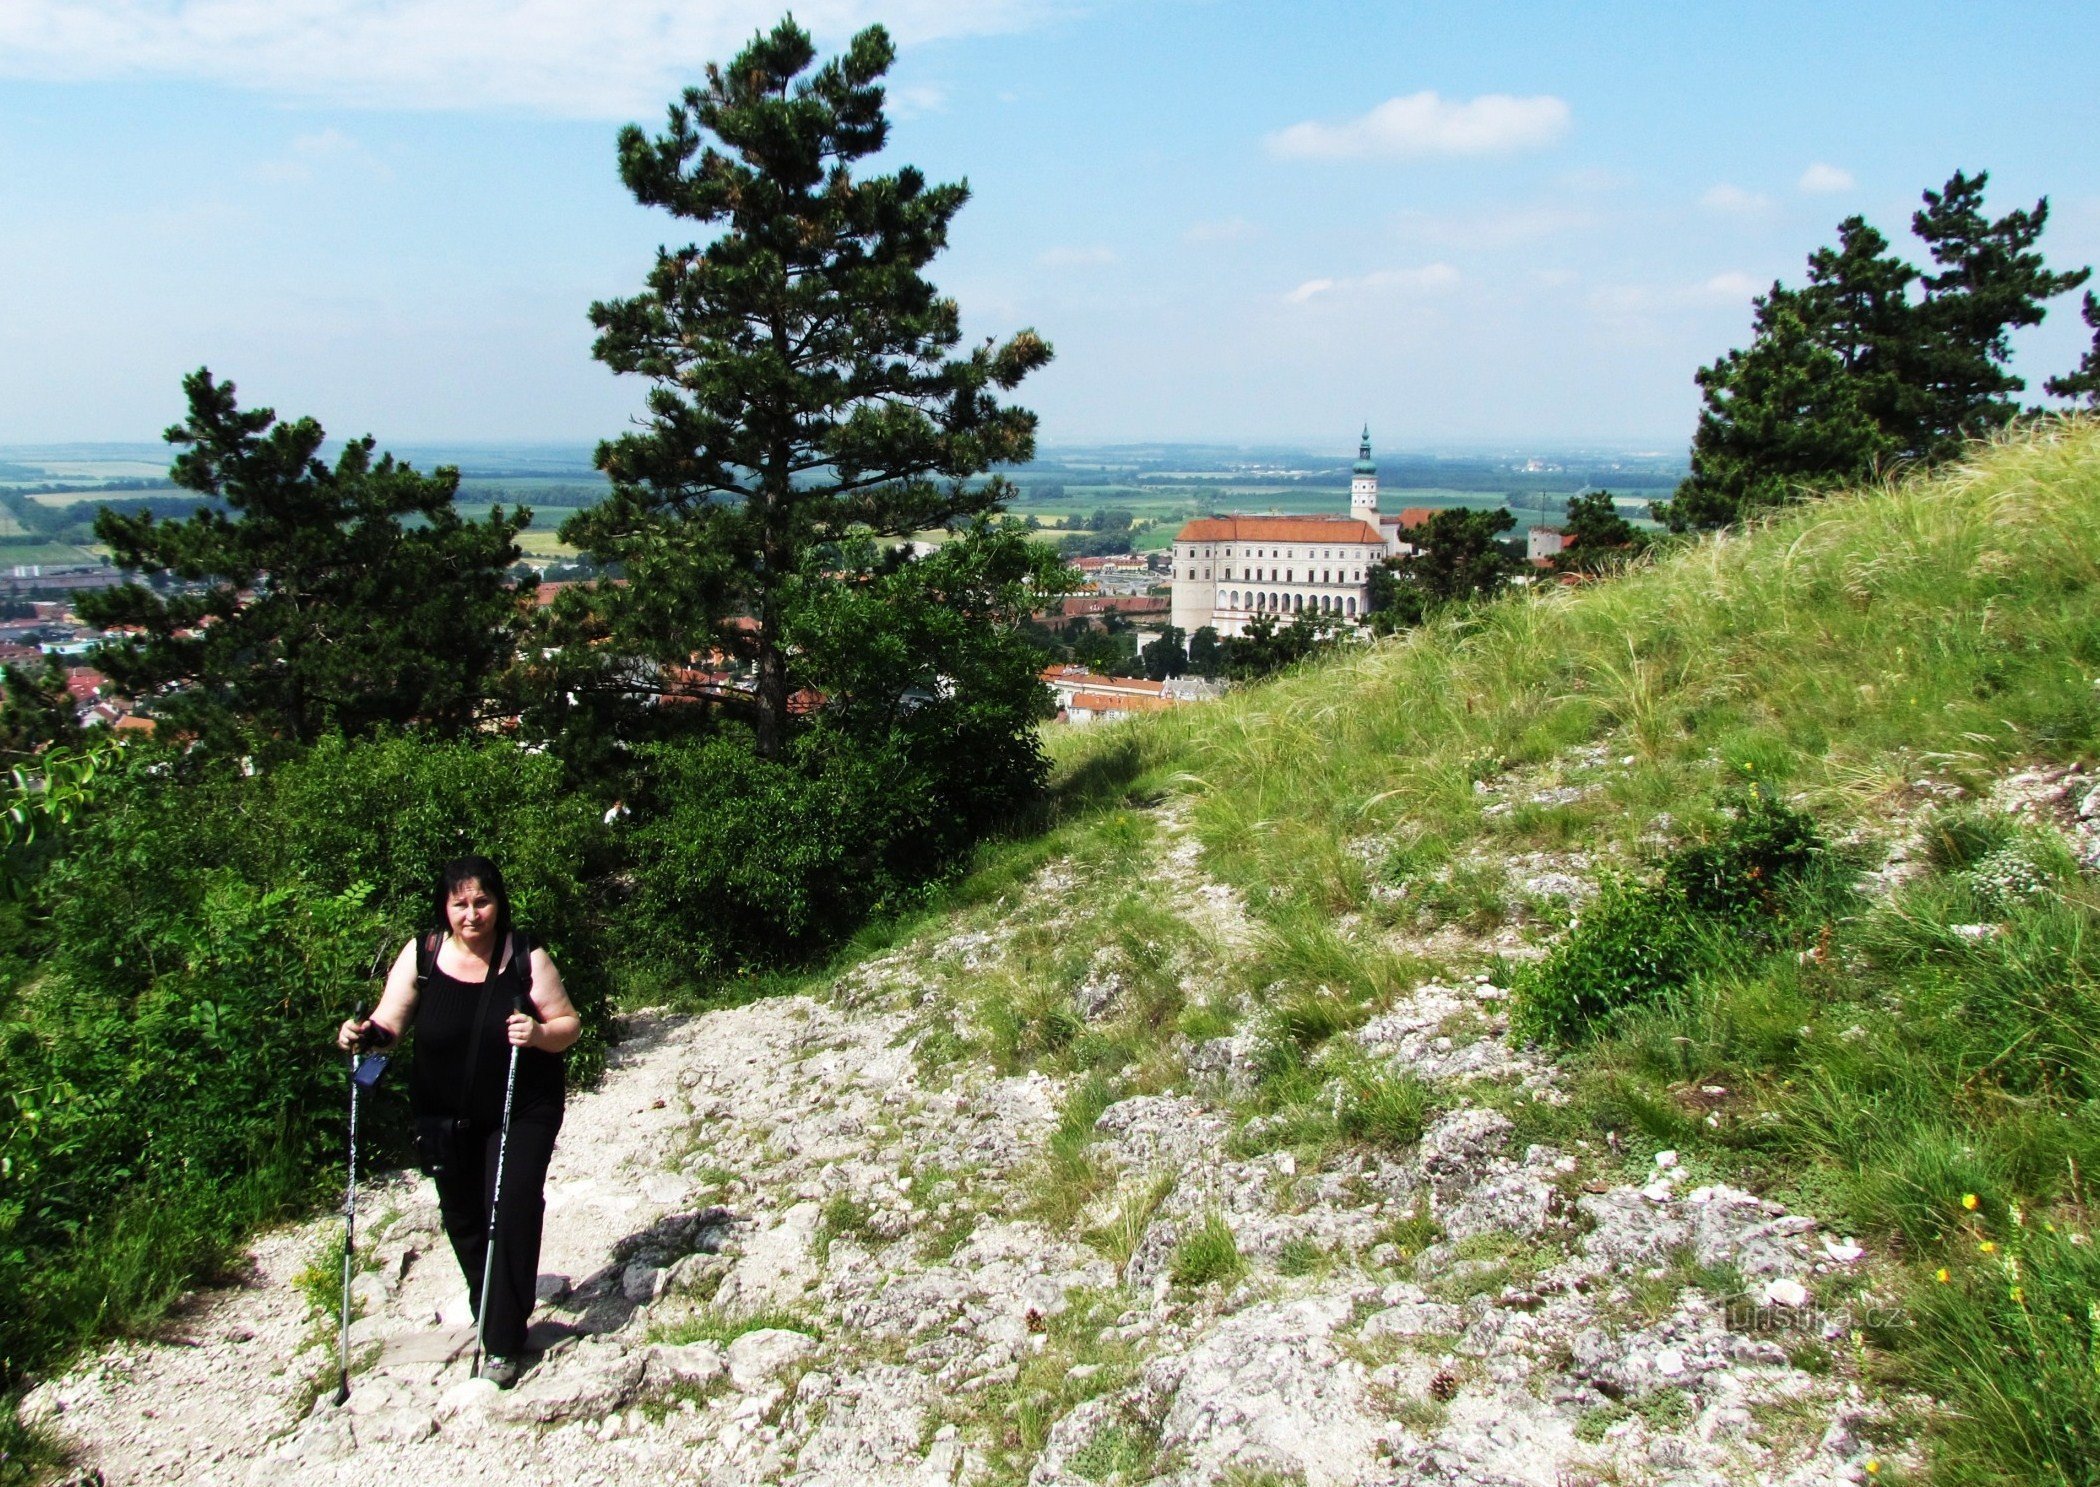 Άποψη του ιστορικού Mikulov από το Svátý kopeček